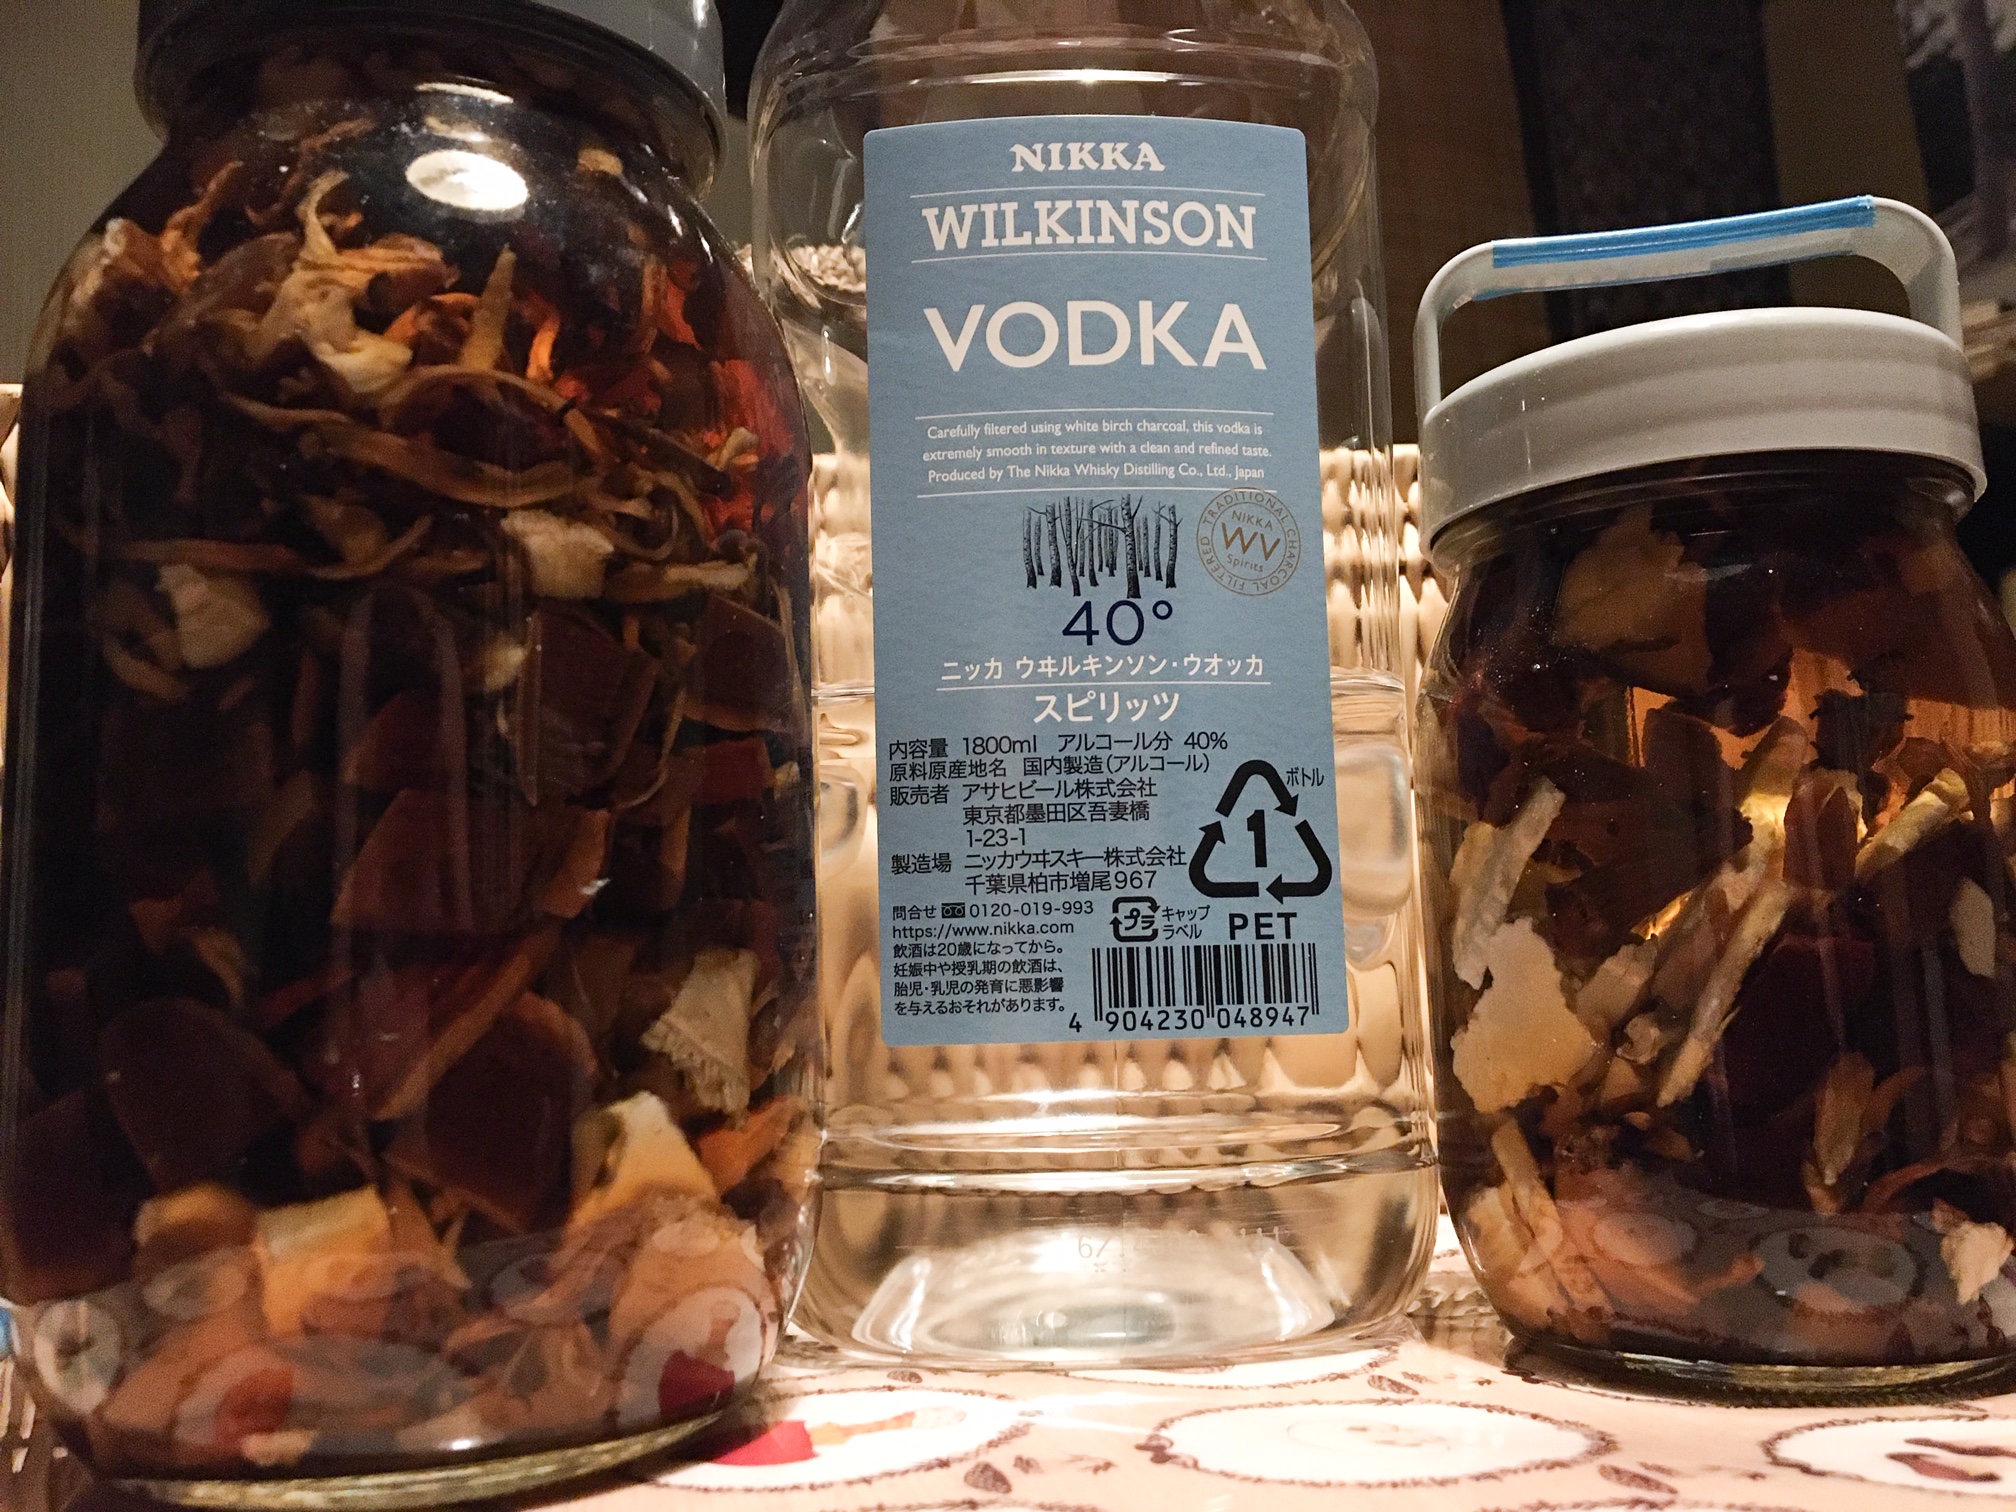 Mushrooms and vodka